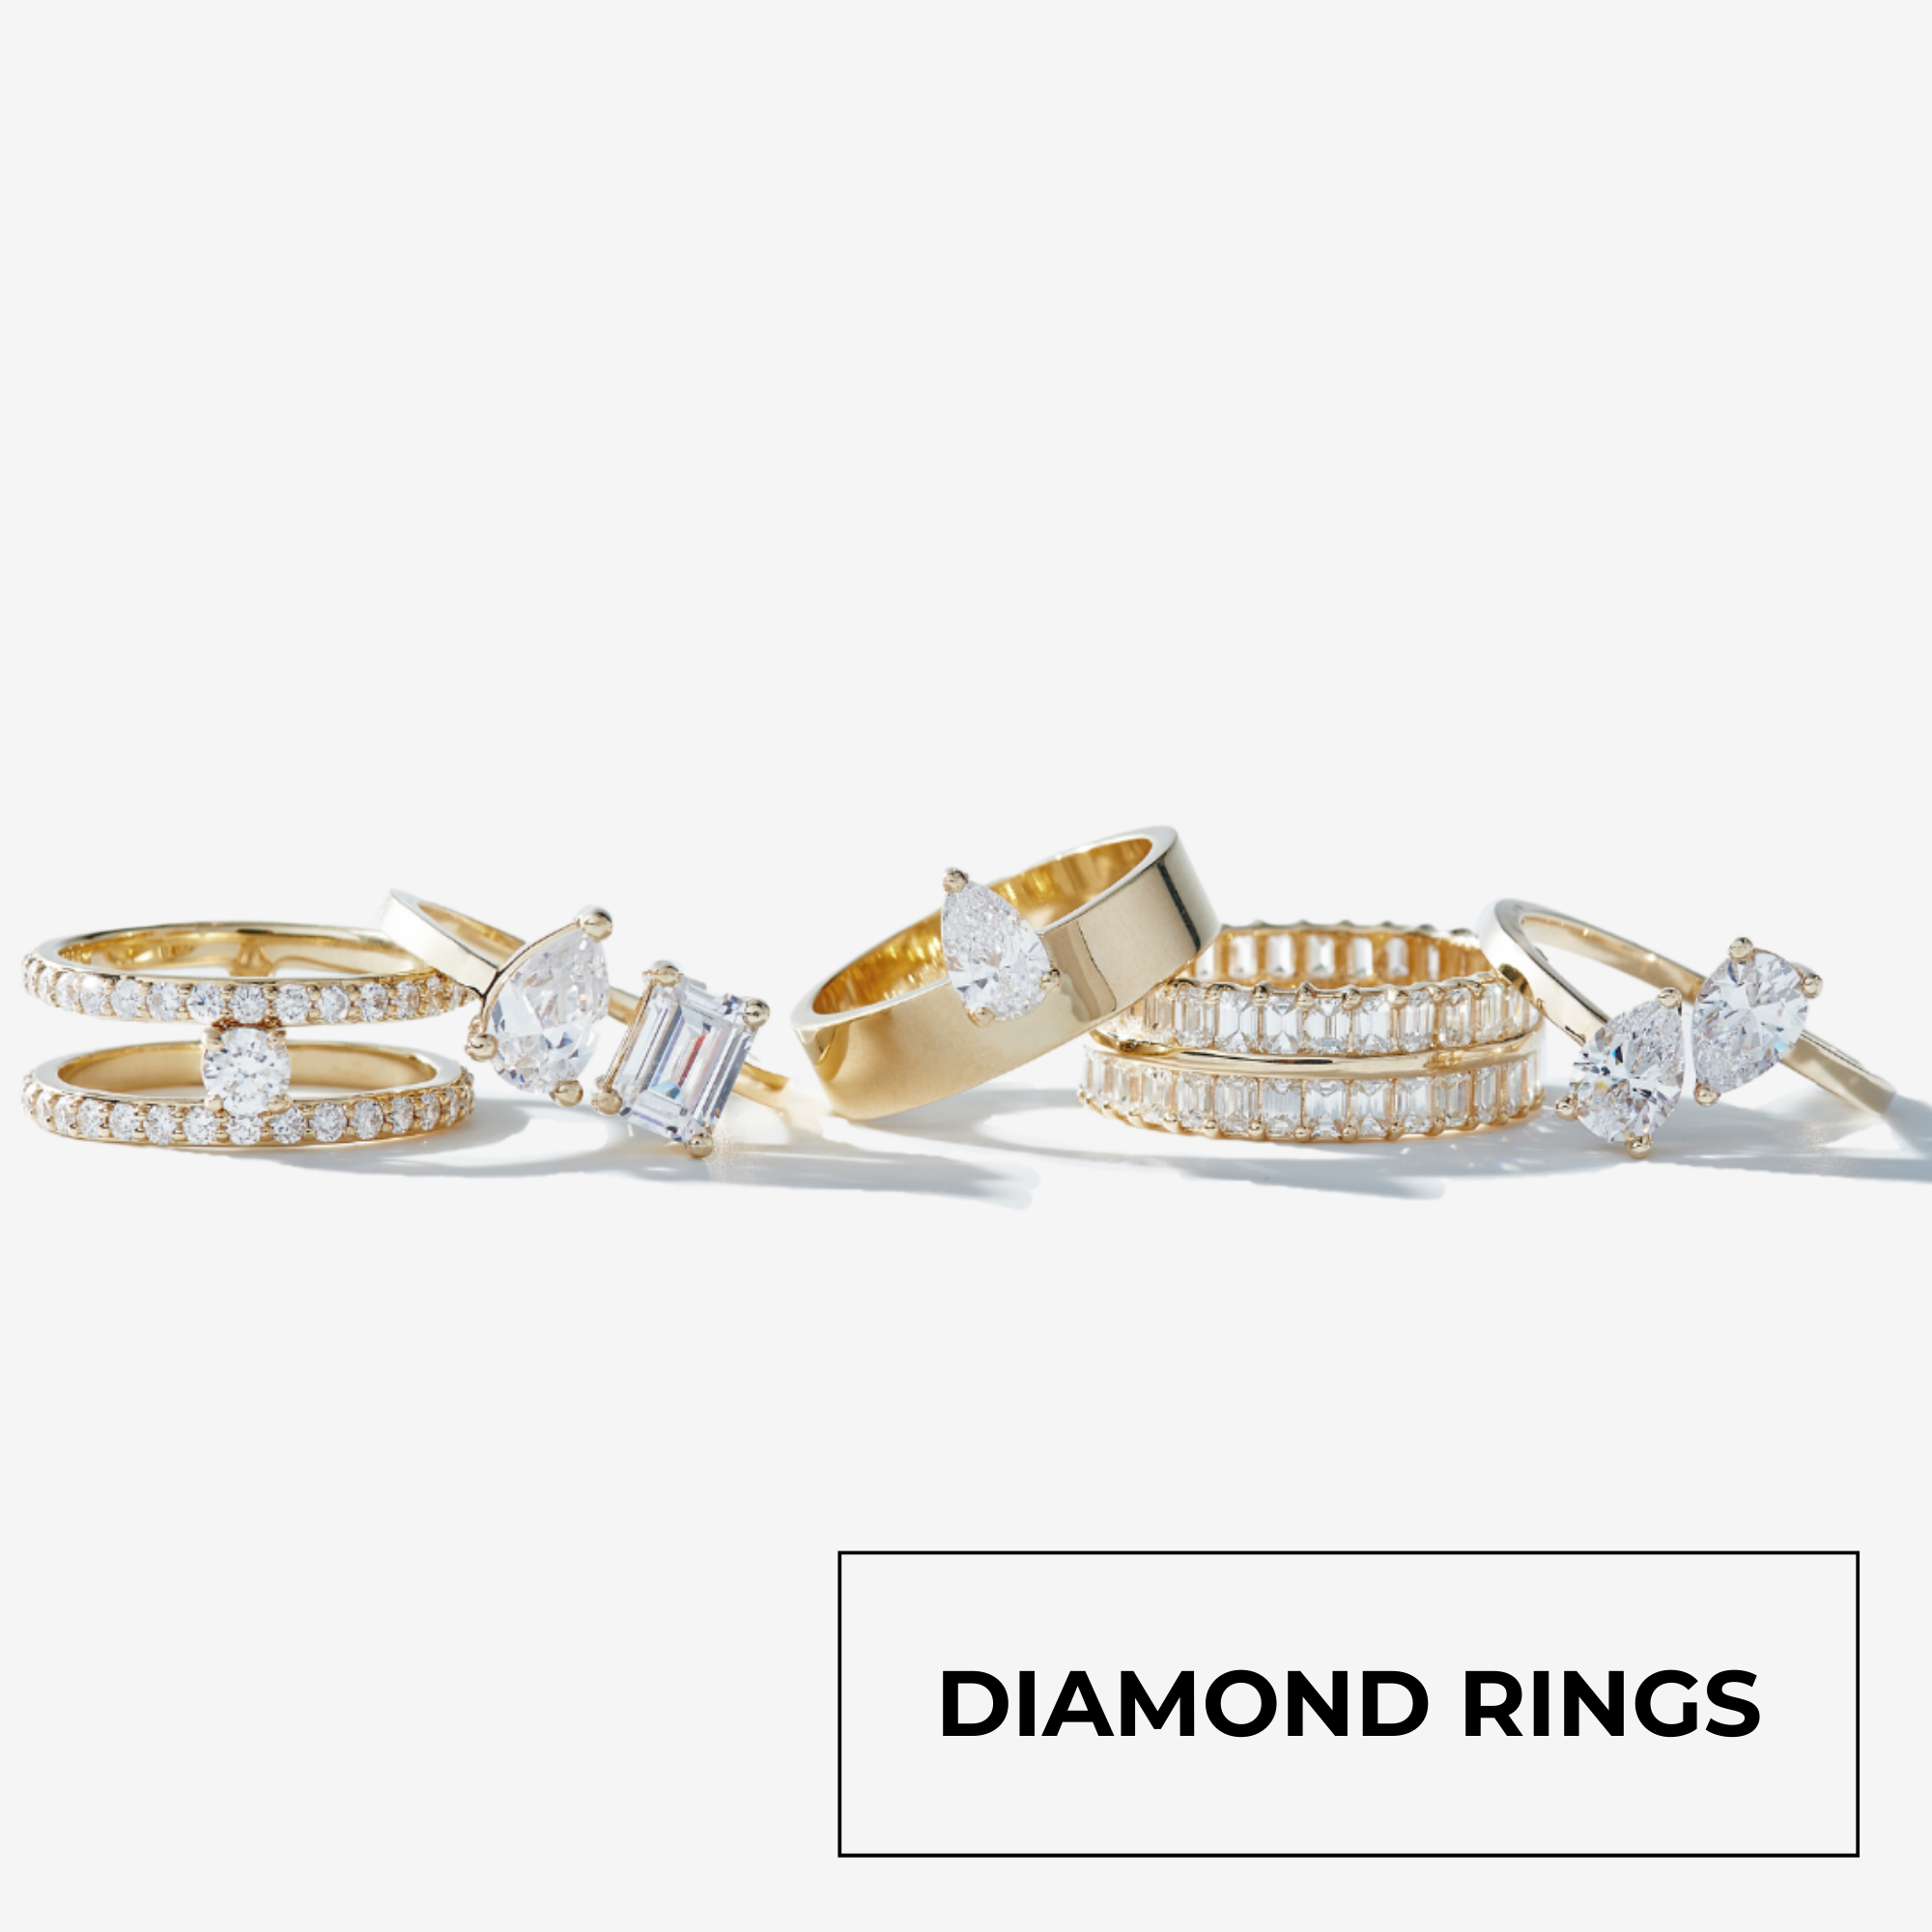 DIAMOND RINGS